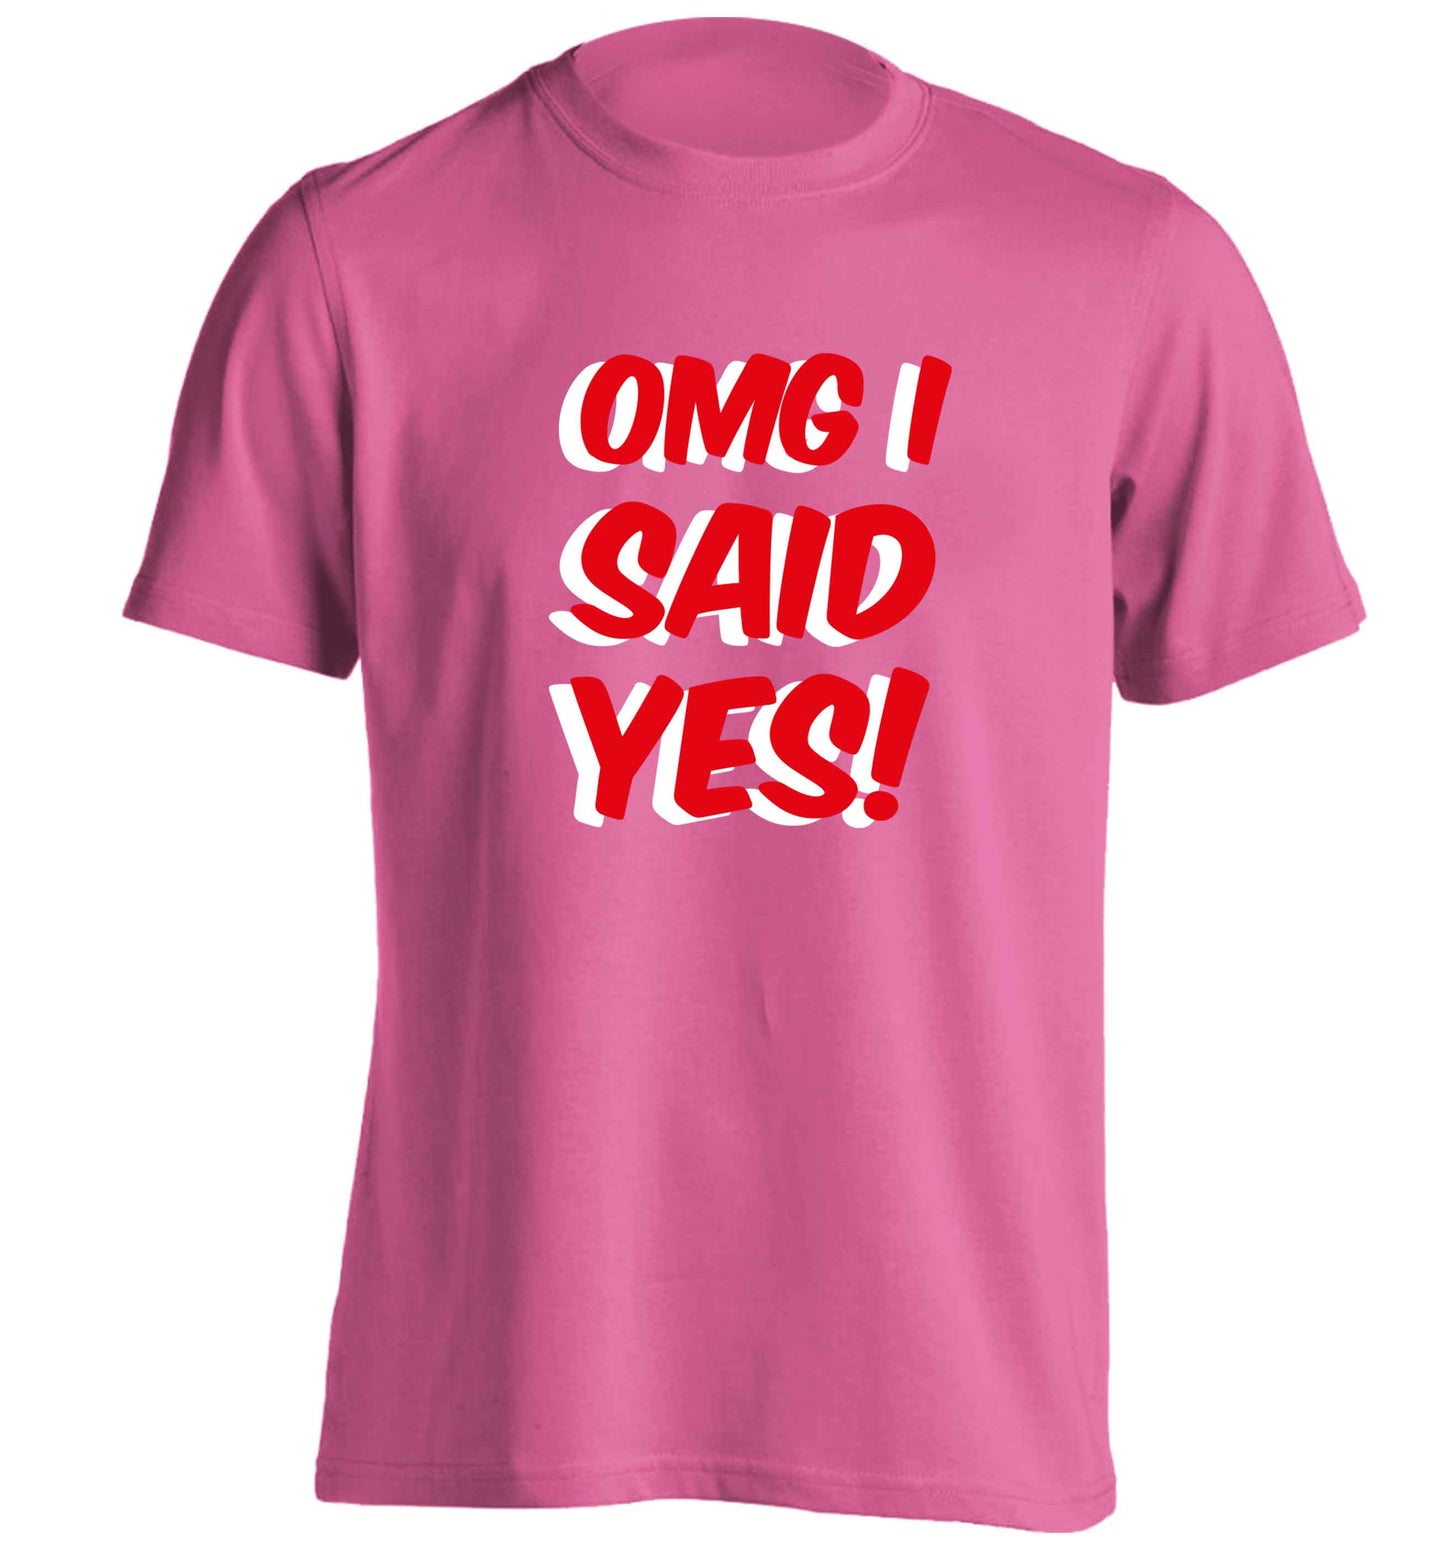 Omg I said yes adults unisex pink Tshirt 2XL